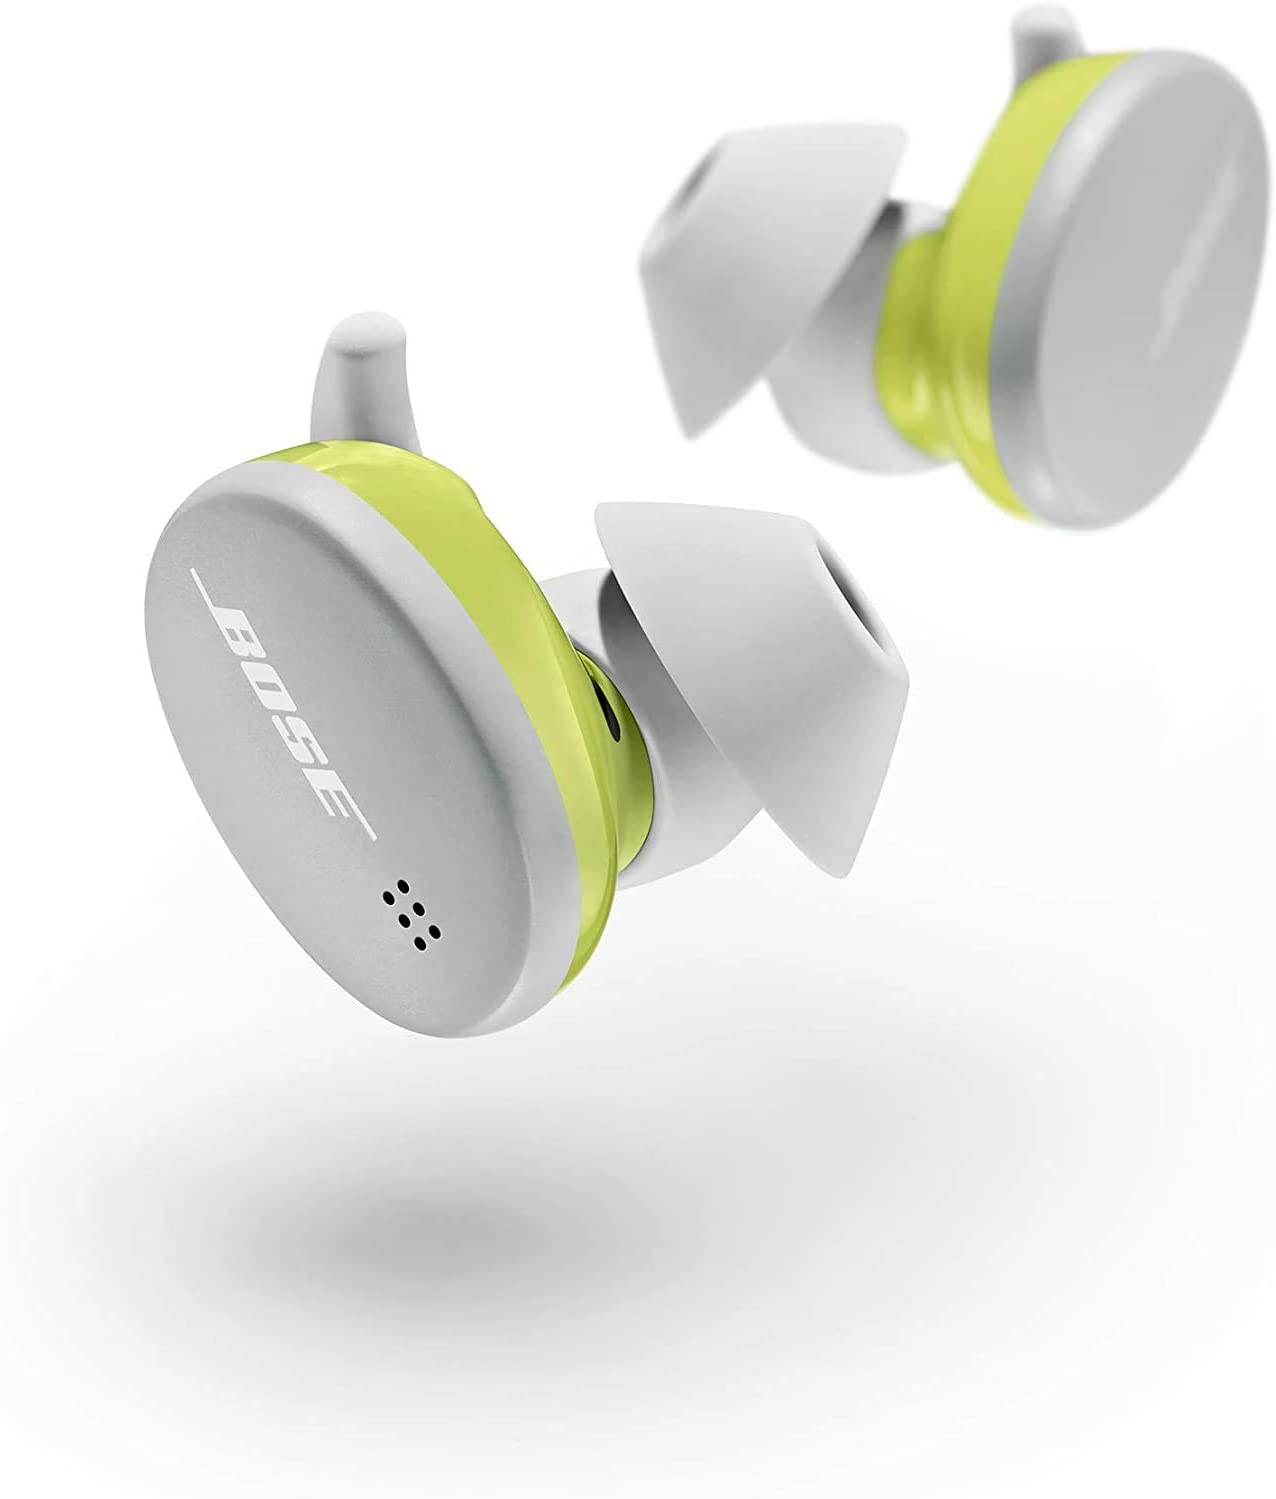 Bose Sports Earbuds True Wireless Earphones Glacier White